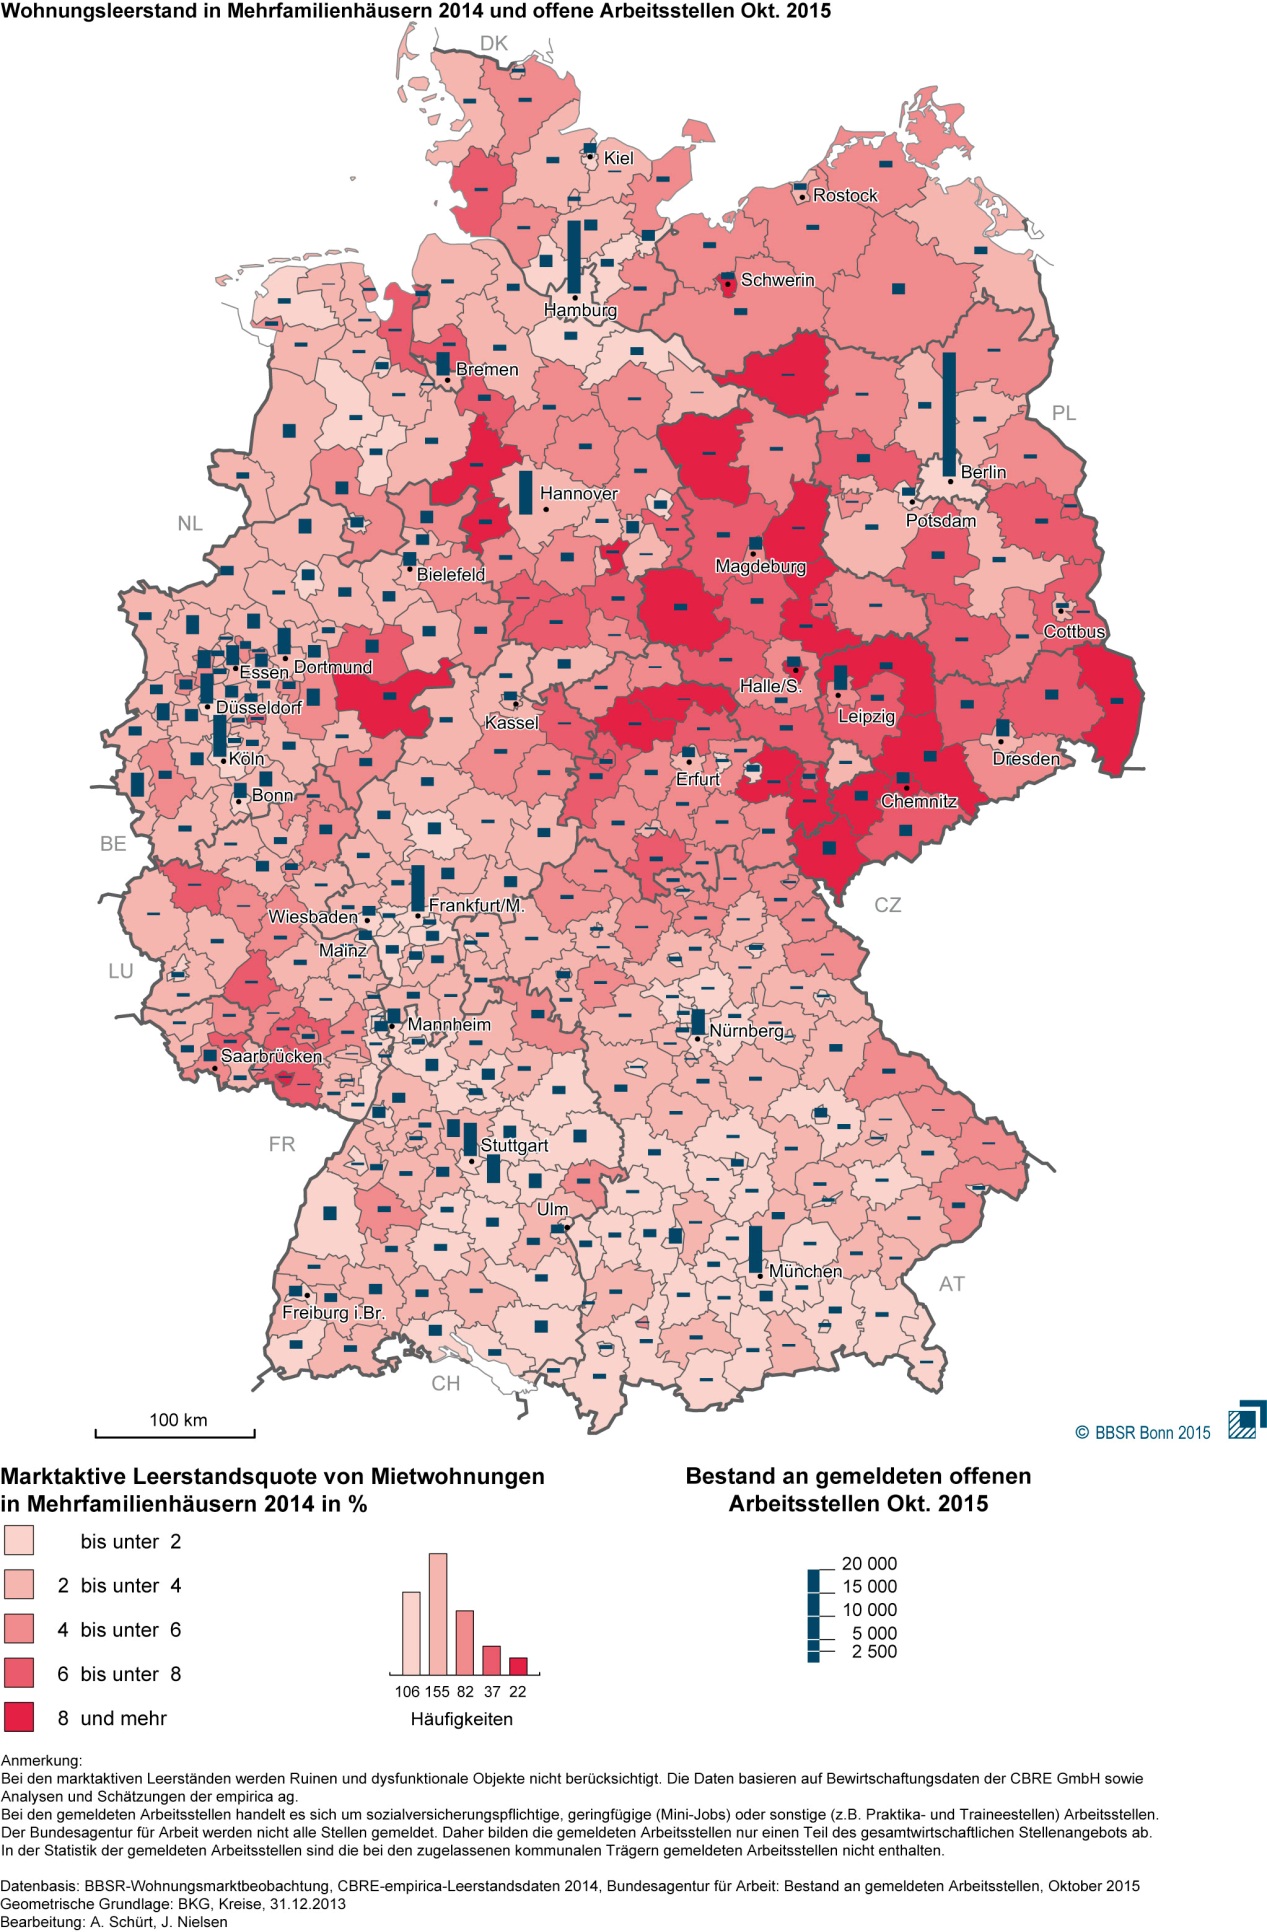 Deutschlandkarte mit farblichen Markierungen für verfügbaren Wohnraum und Angaben zu den offenen Arbeitsstellen